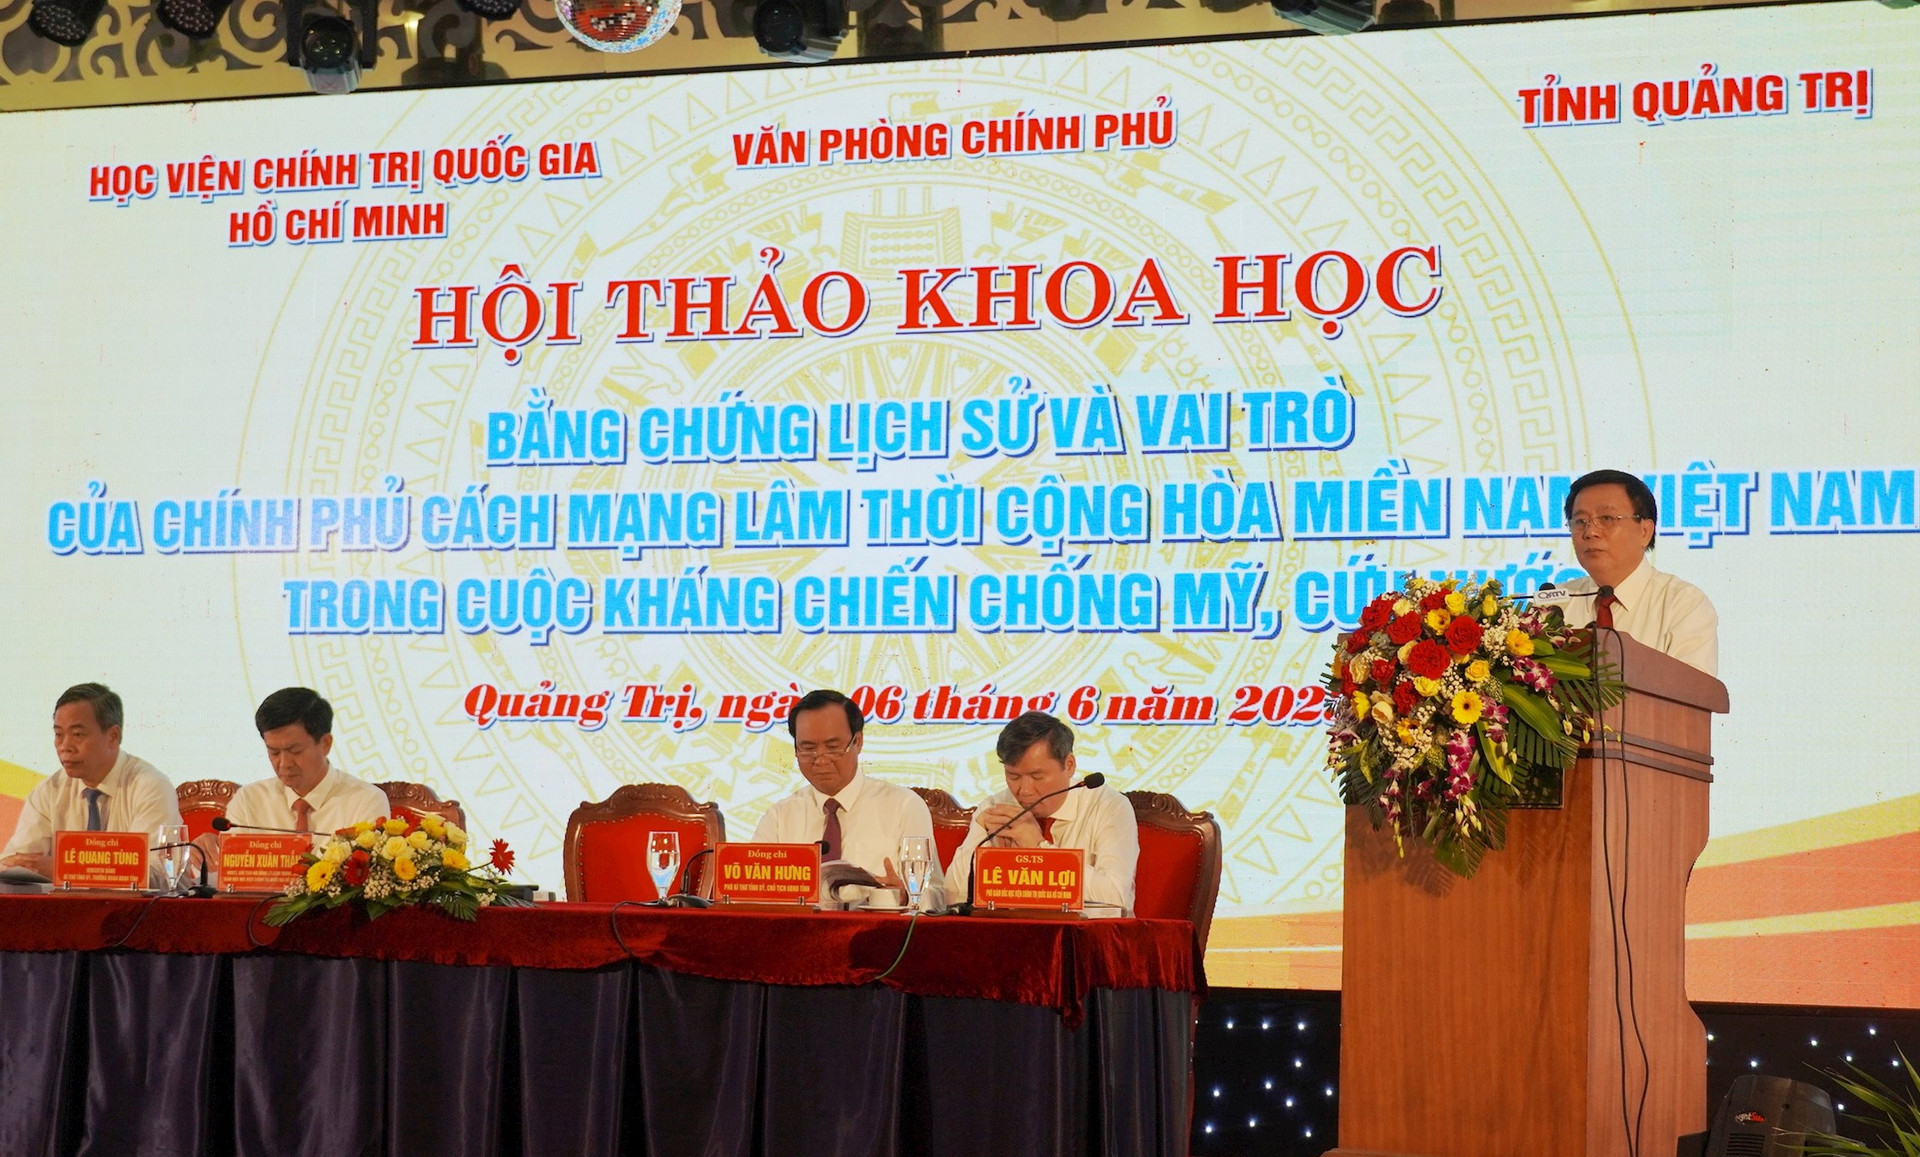 Hội thảo khoa học về vai trò của Chính phủ Cách mạng lâm thời Cộng hòa miền Nam Việt Nam